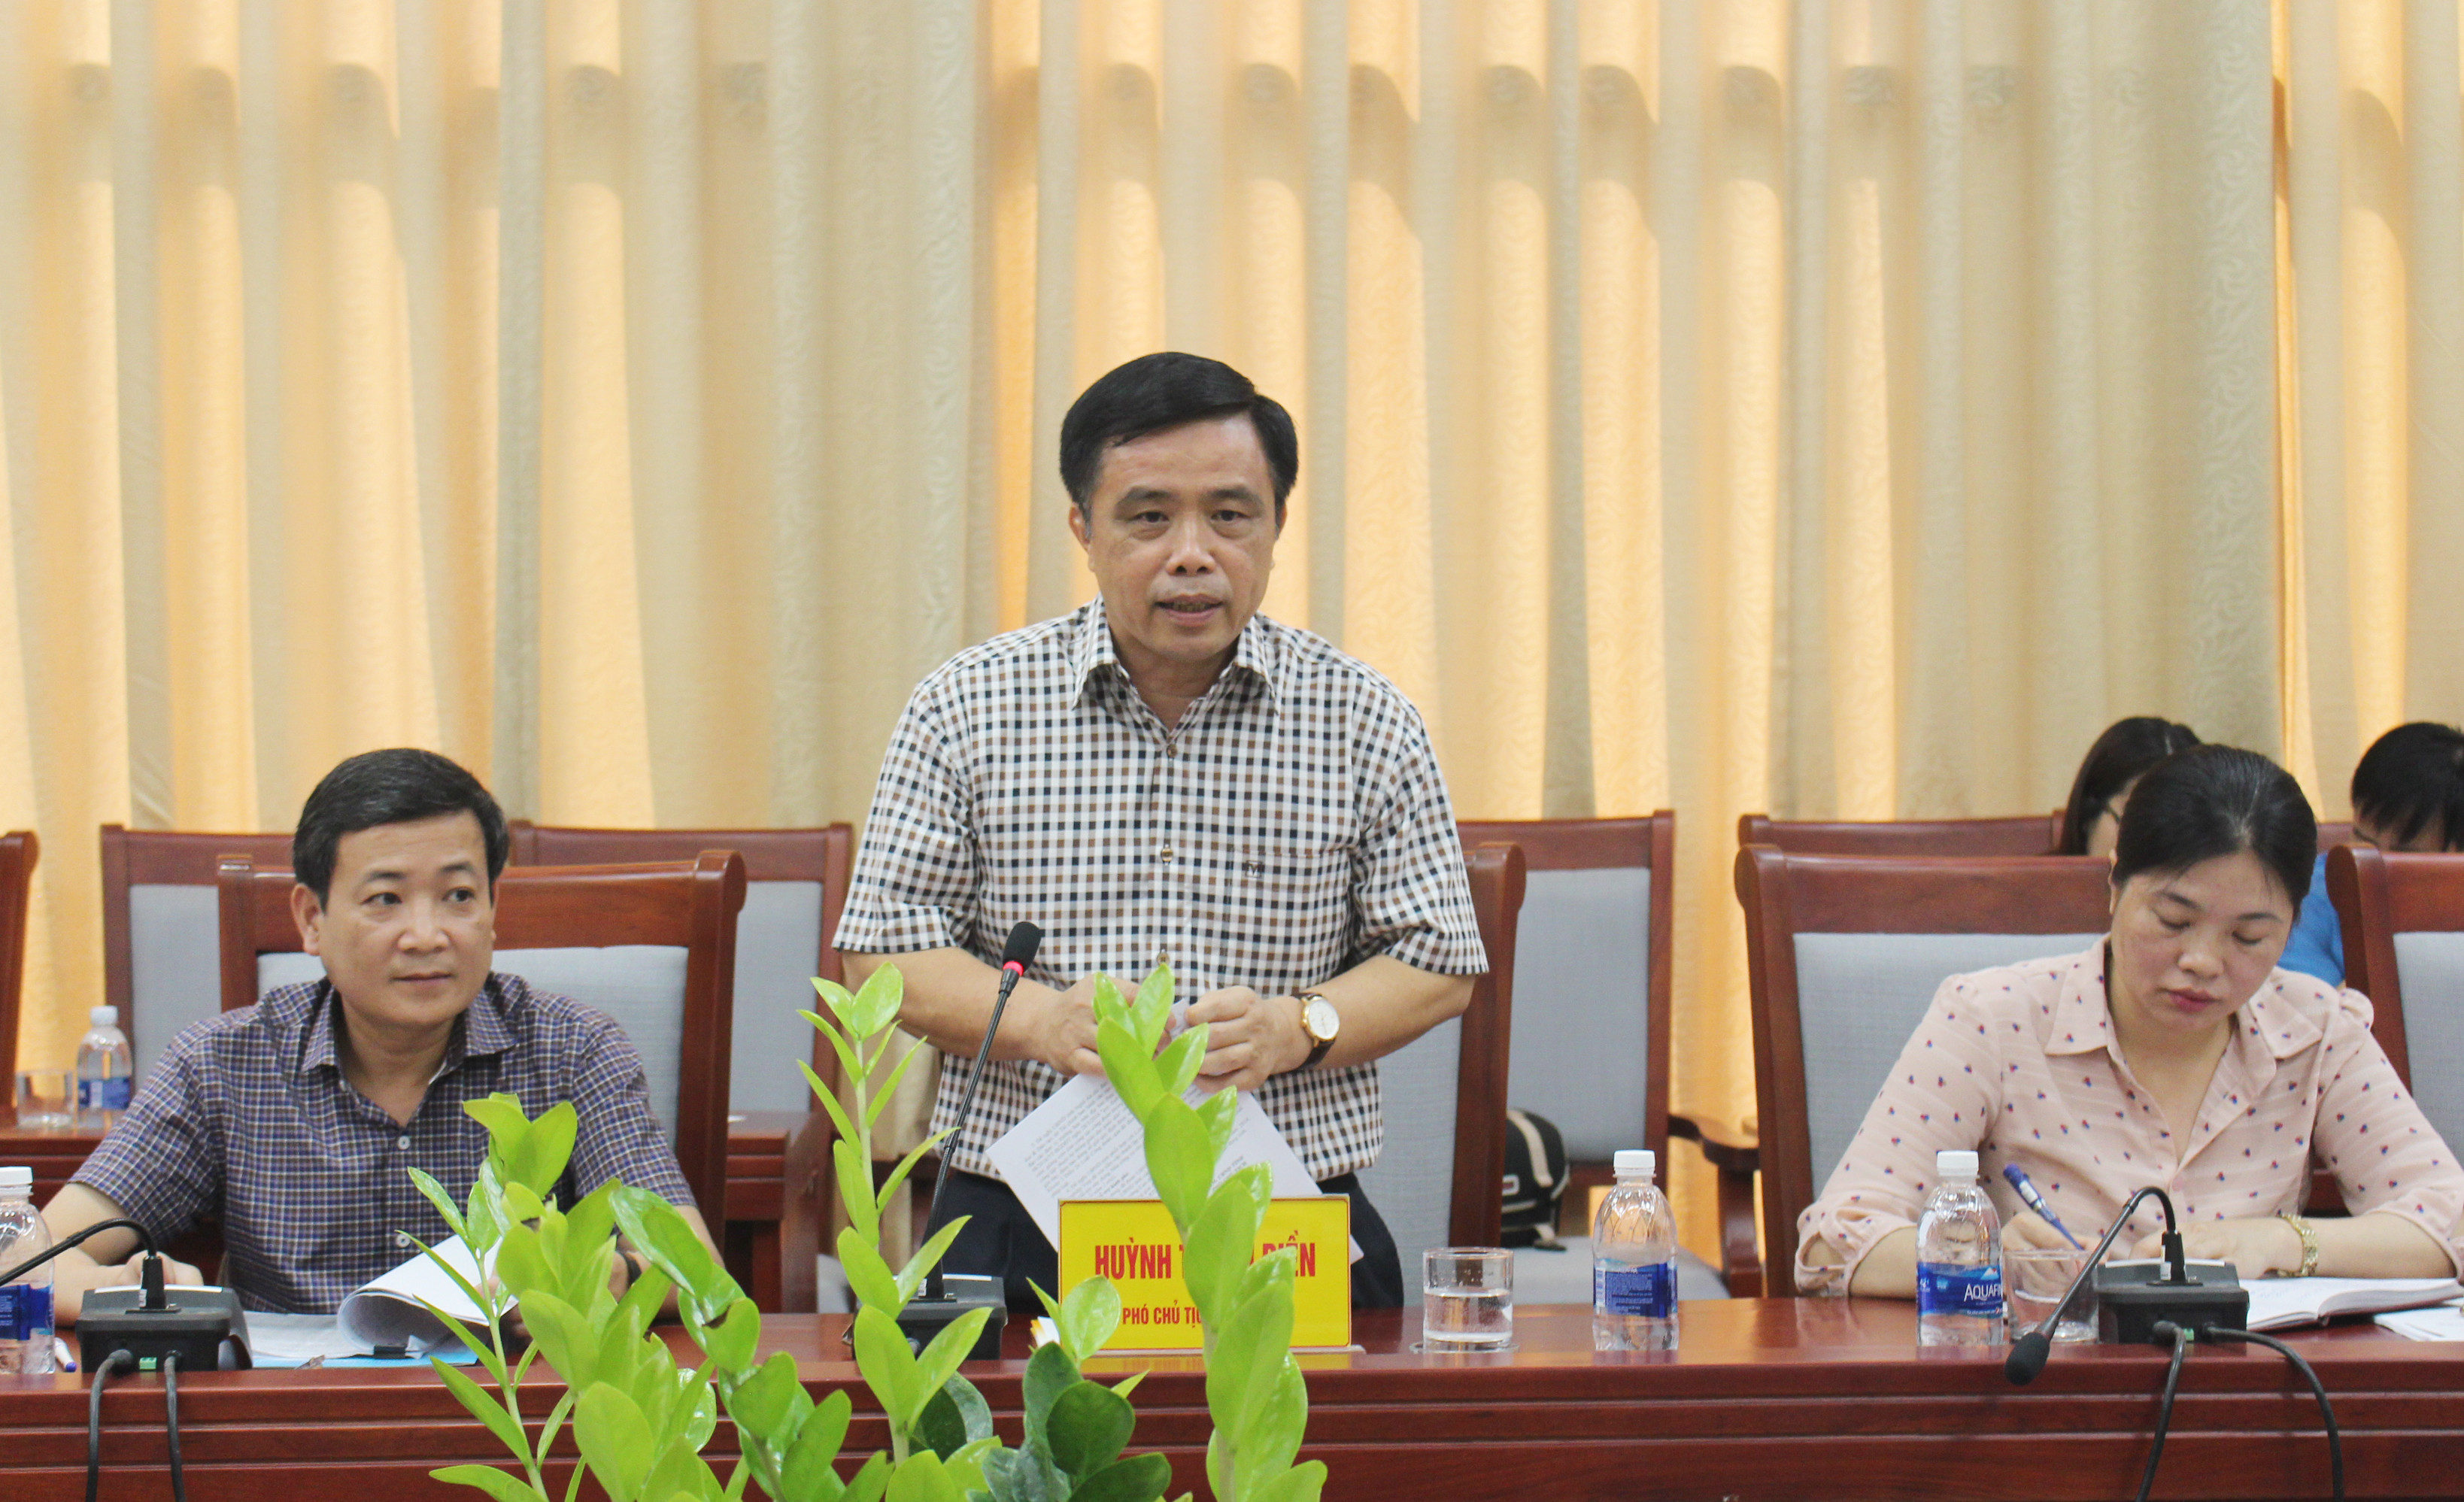 Phó Chủ tịch UBND tỉnh Huỳnh Thanh Điền kết luận buổi làm việc. Ảnh: Phước Anh